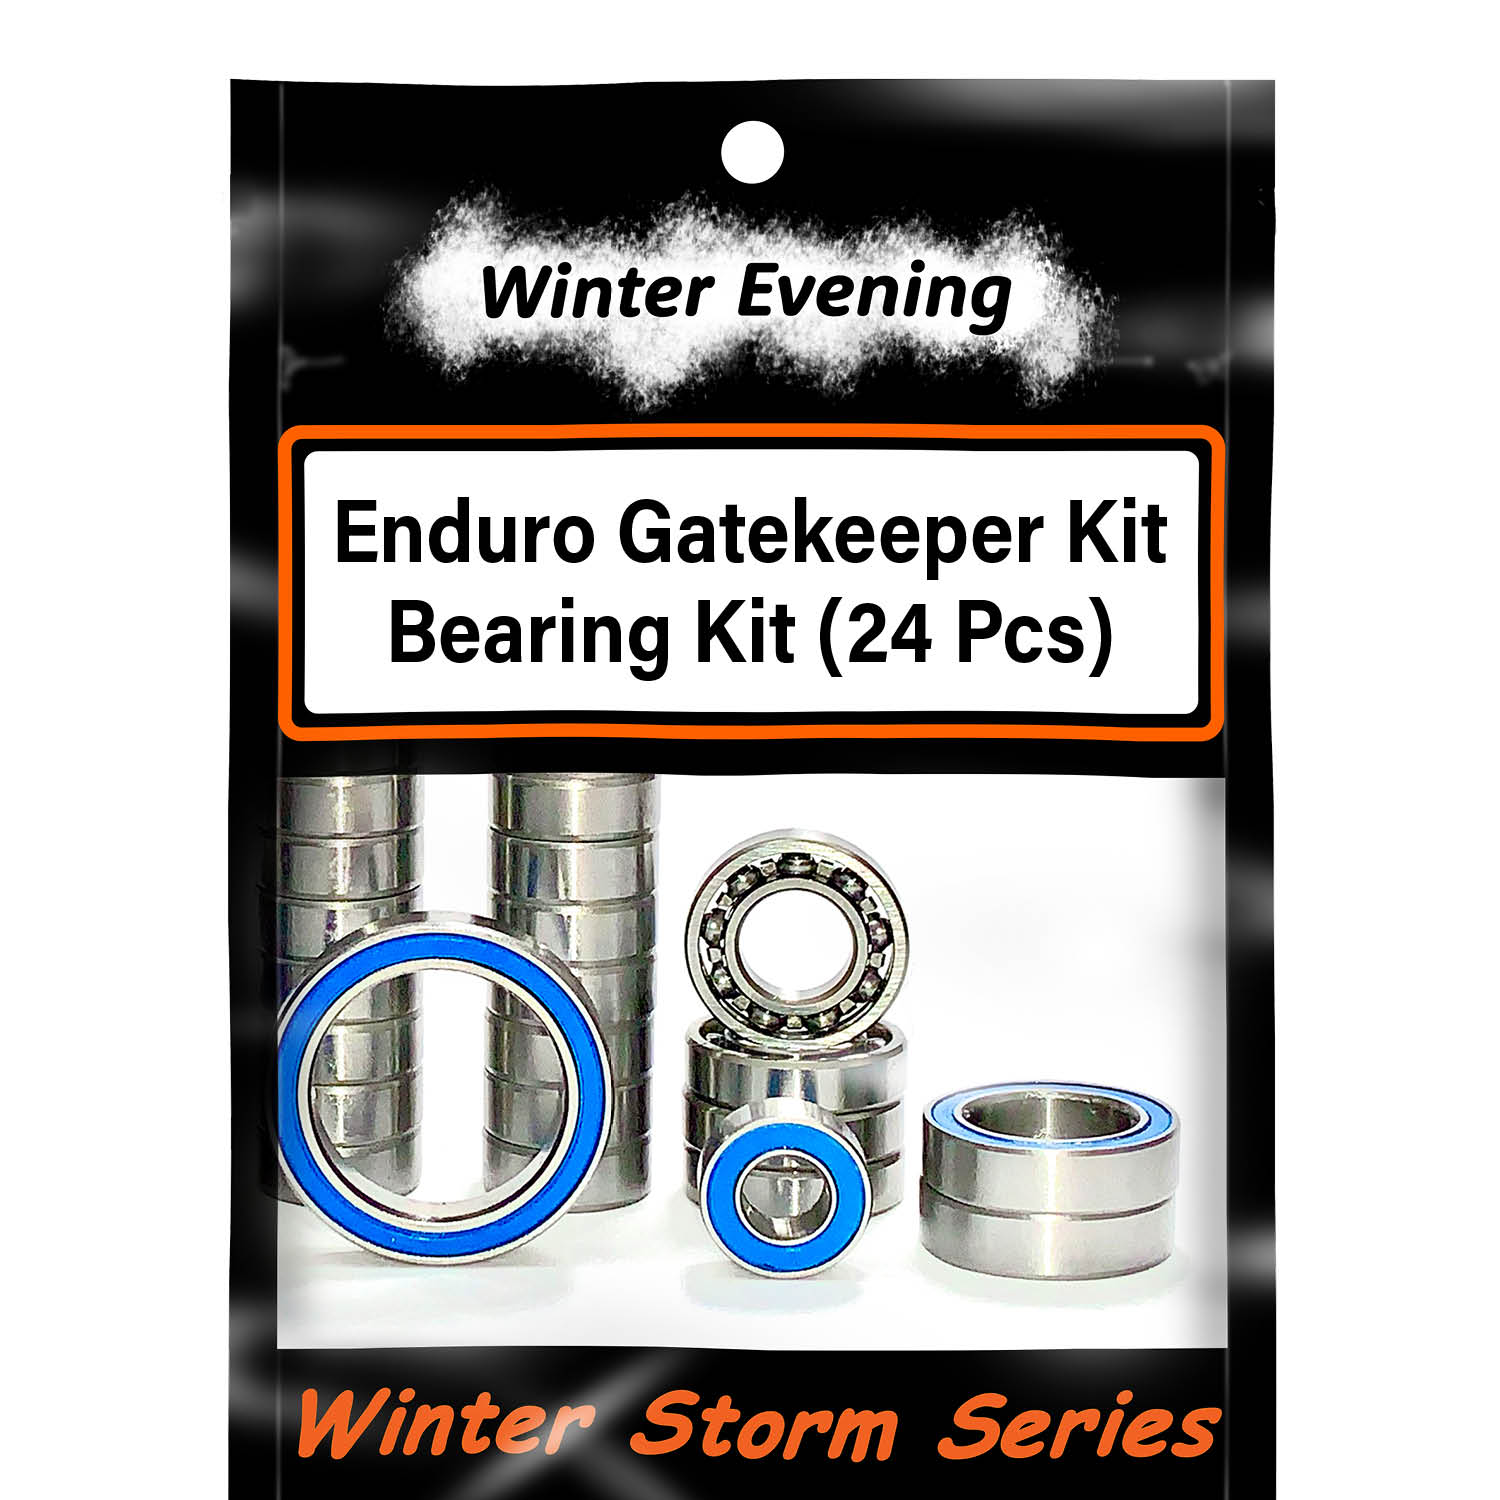 Winter Evening - Element RC Enduro Gatekeeper Kit (24 Pcs Bearings Kit)